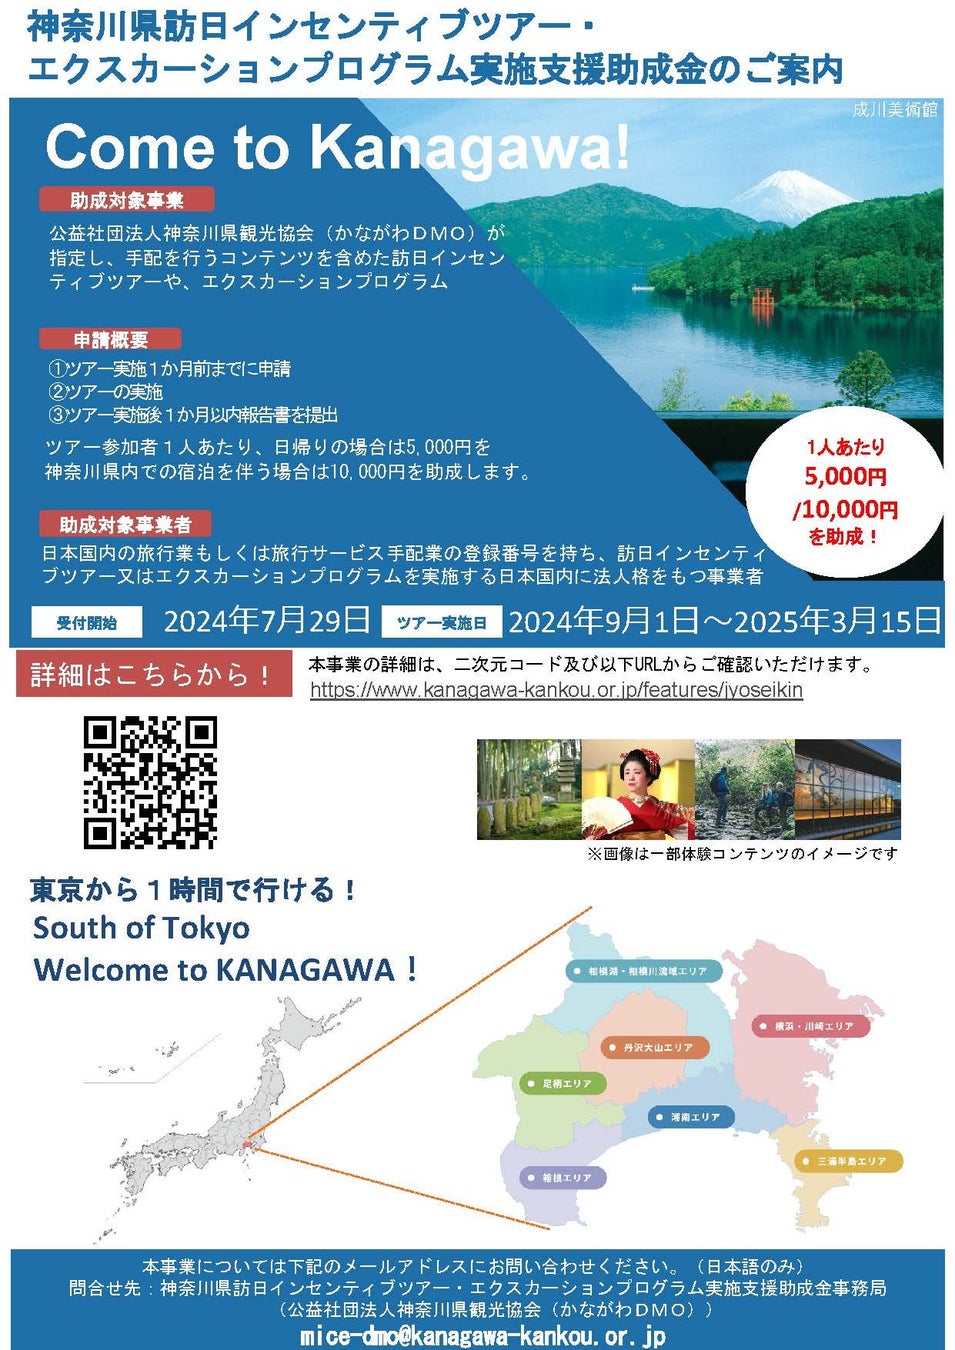 【観光事業者向け】神奈川県訪日インセンティブツアー・エクスカーションプログラム実施支援助成金のお知らせ